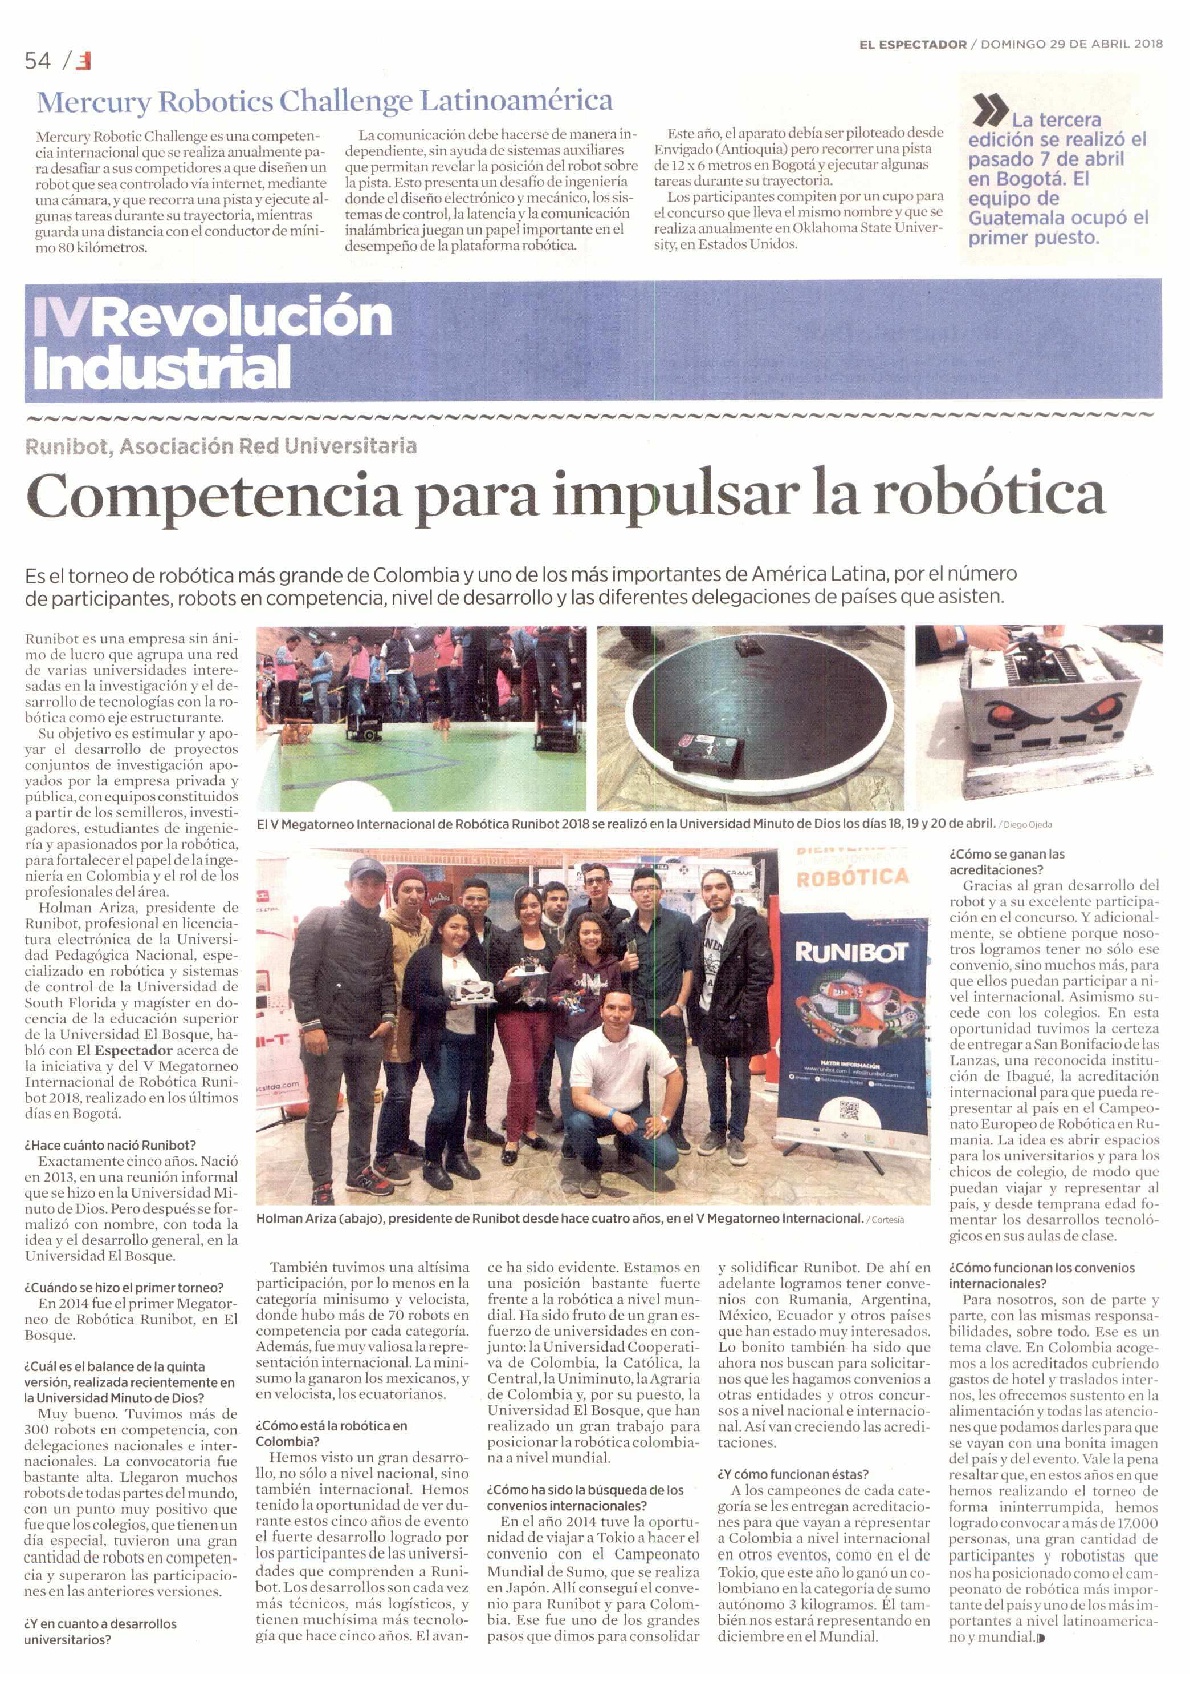 Runibot el evento más grande de Colombia de robótica